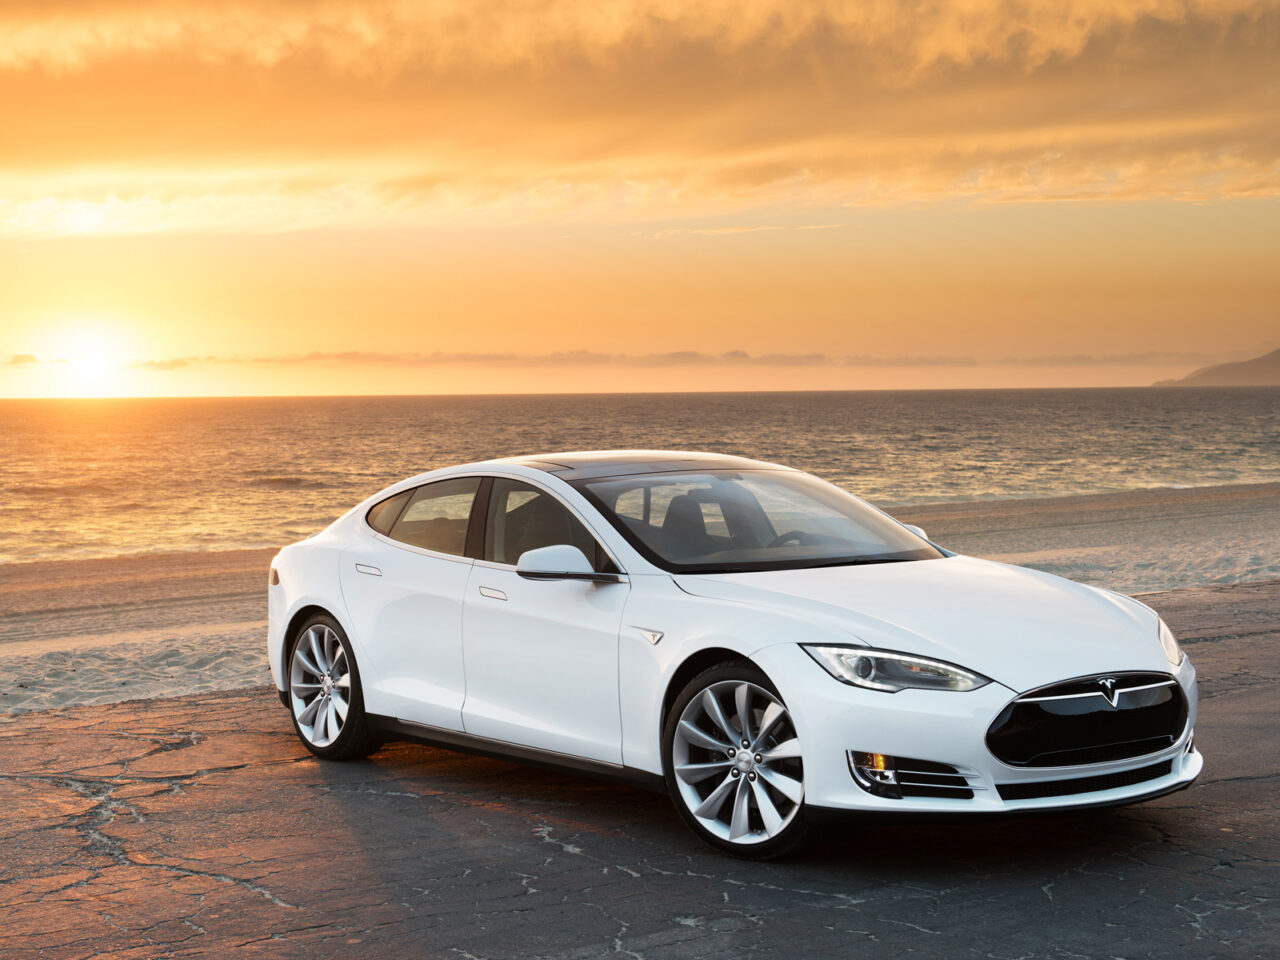 Նոր Tesla-ն մեկ լիցքավորմամբ կարող է 800 կմ ճանապարհ անցնել